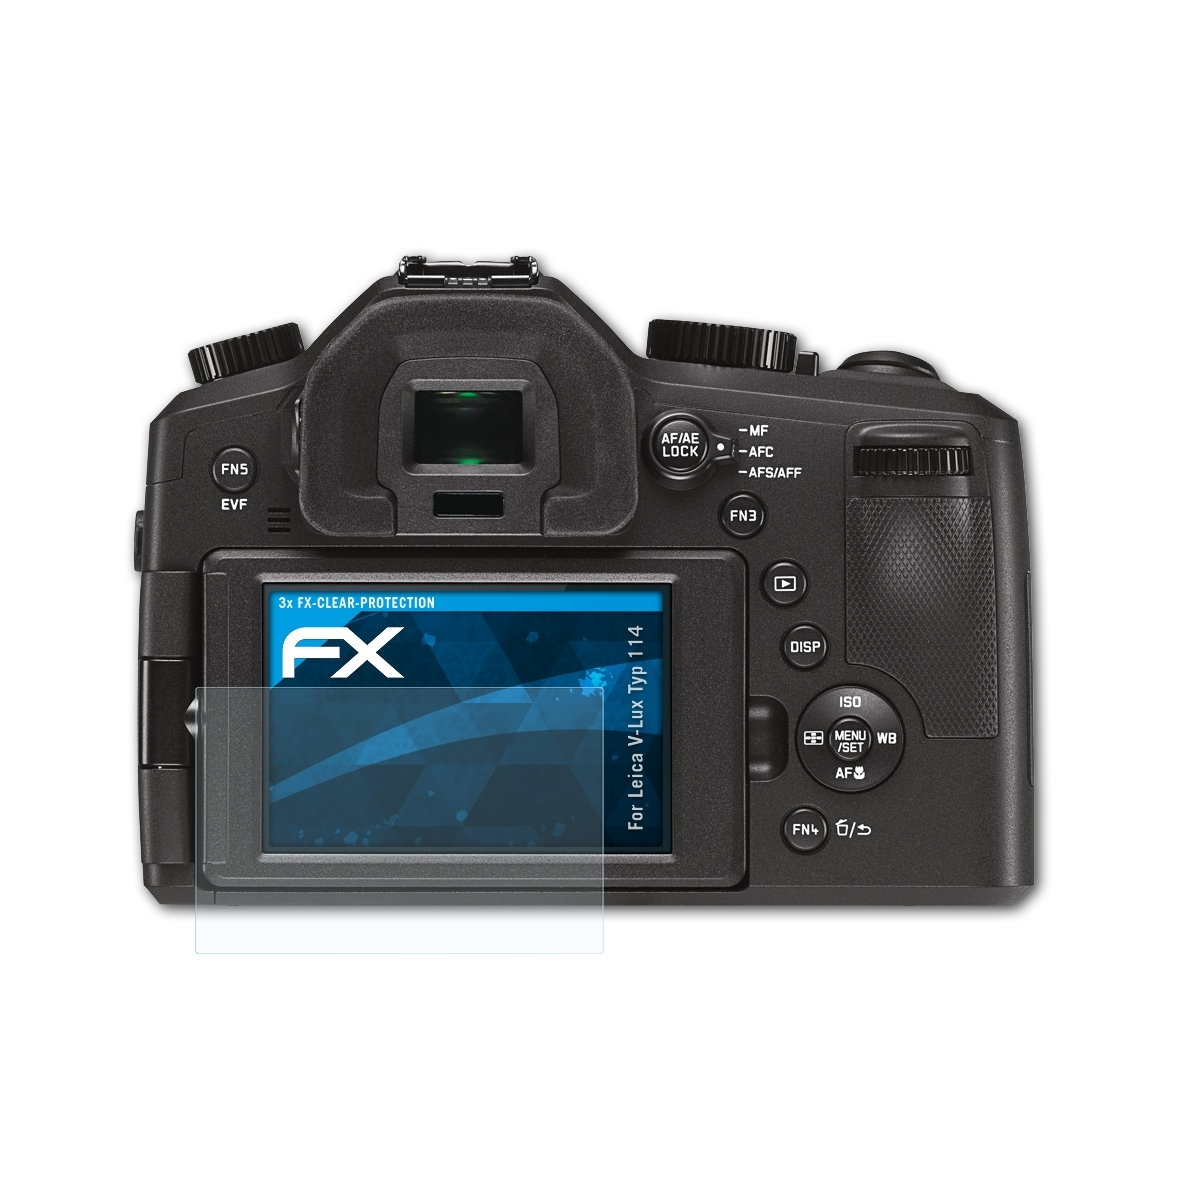 Leica ATFOLIX Displayschutz(für (Typ FX-Clear 114)) V-Lux 3x